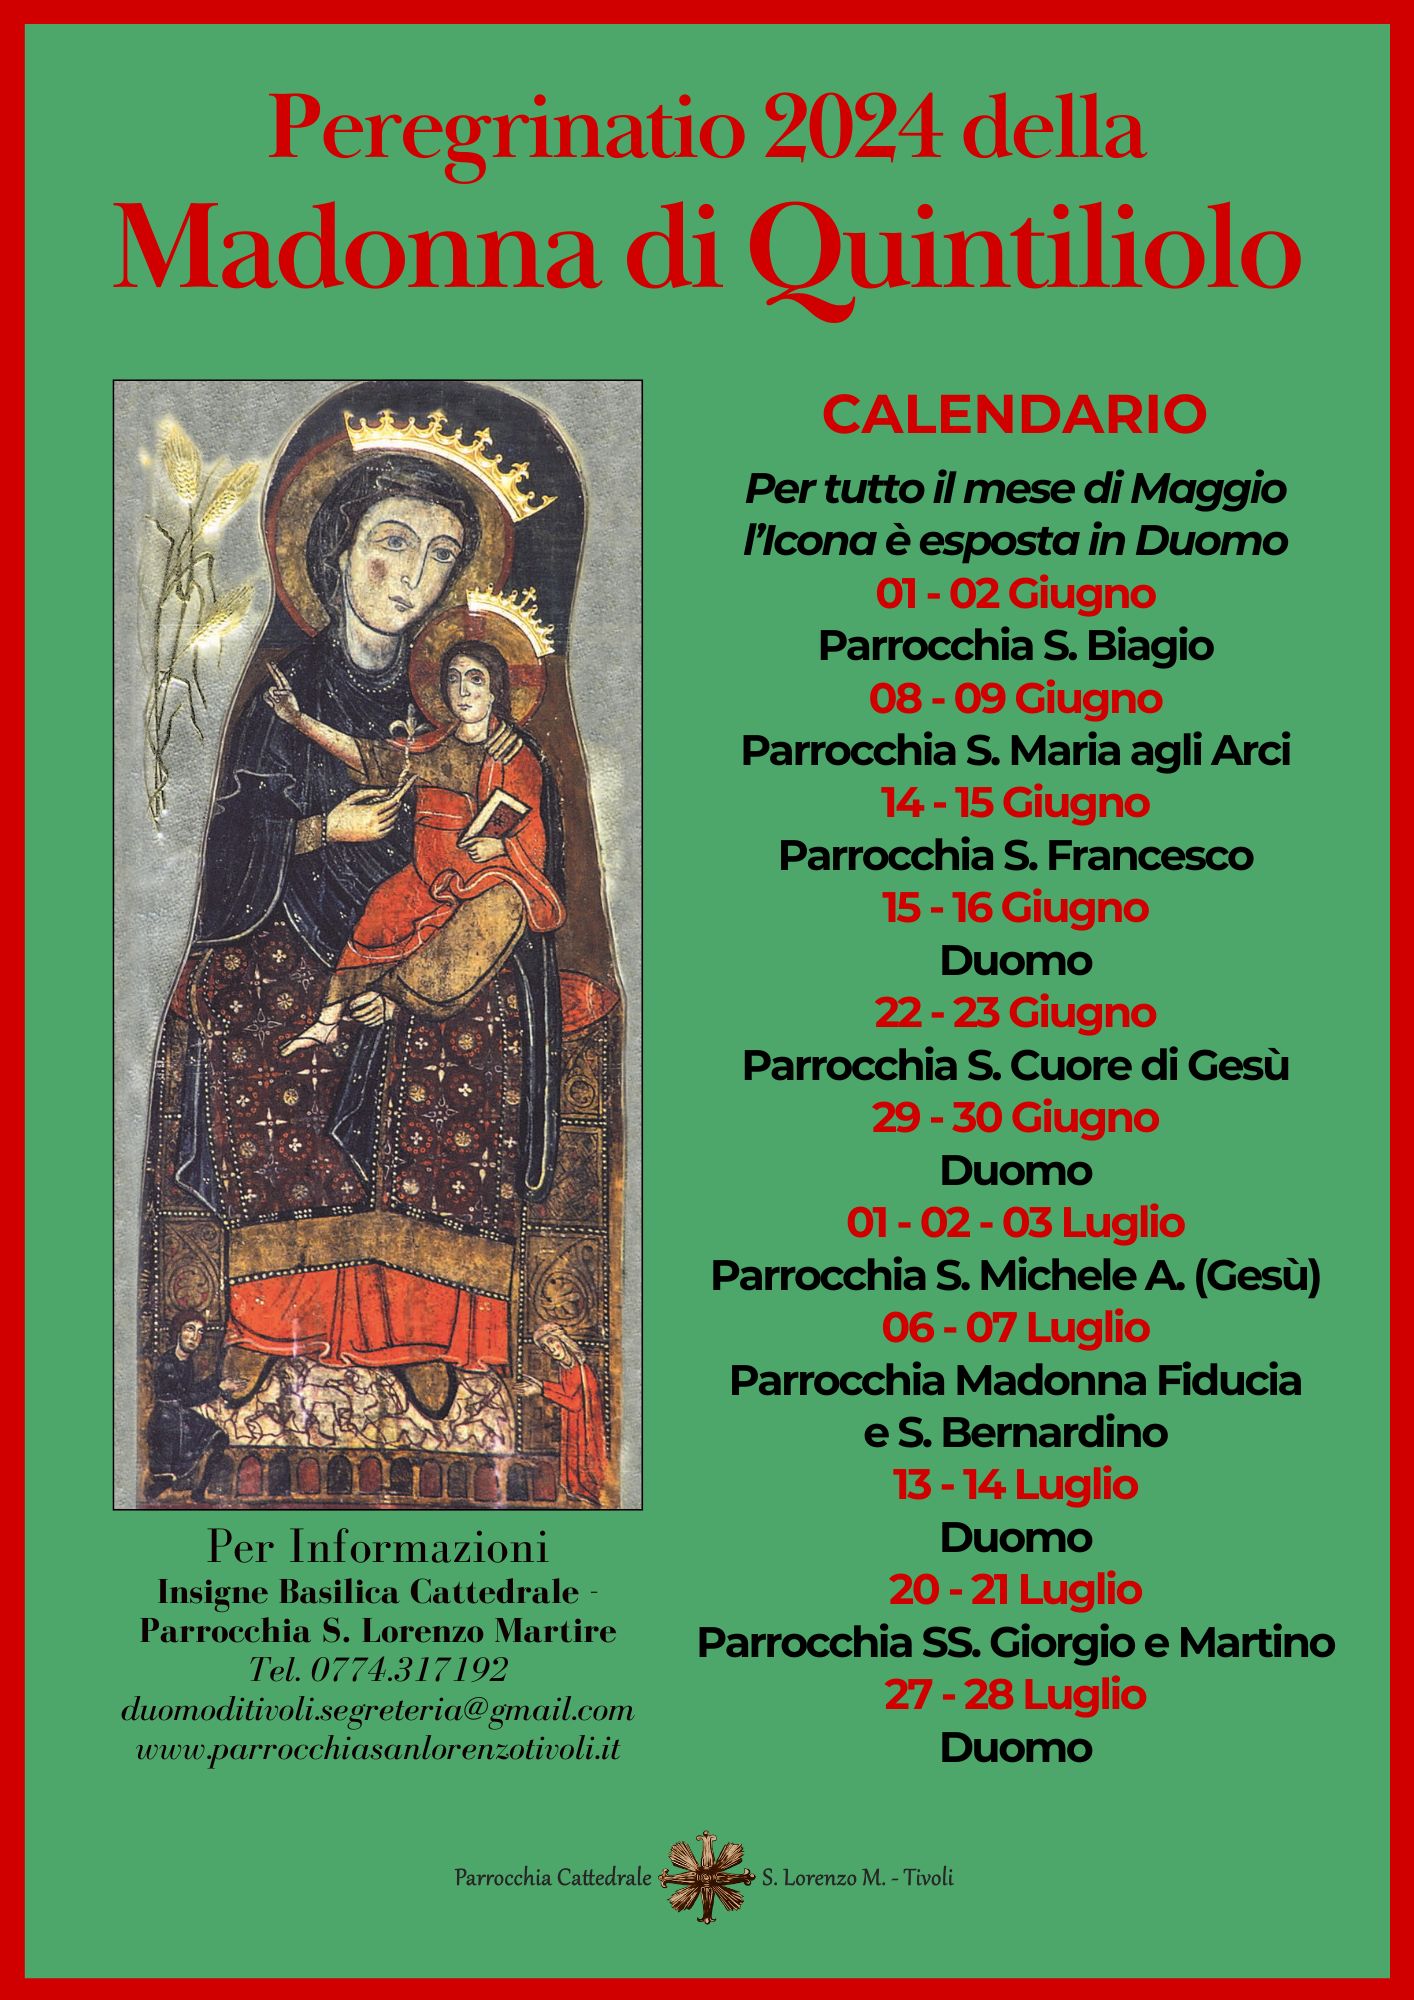 Peregrinatio 2024 della Madonna di Quintiliolo. Il calendario